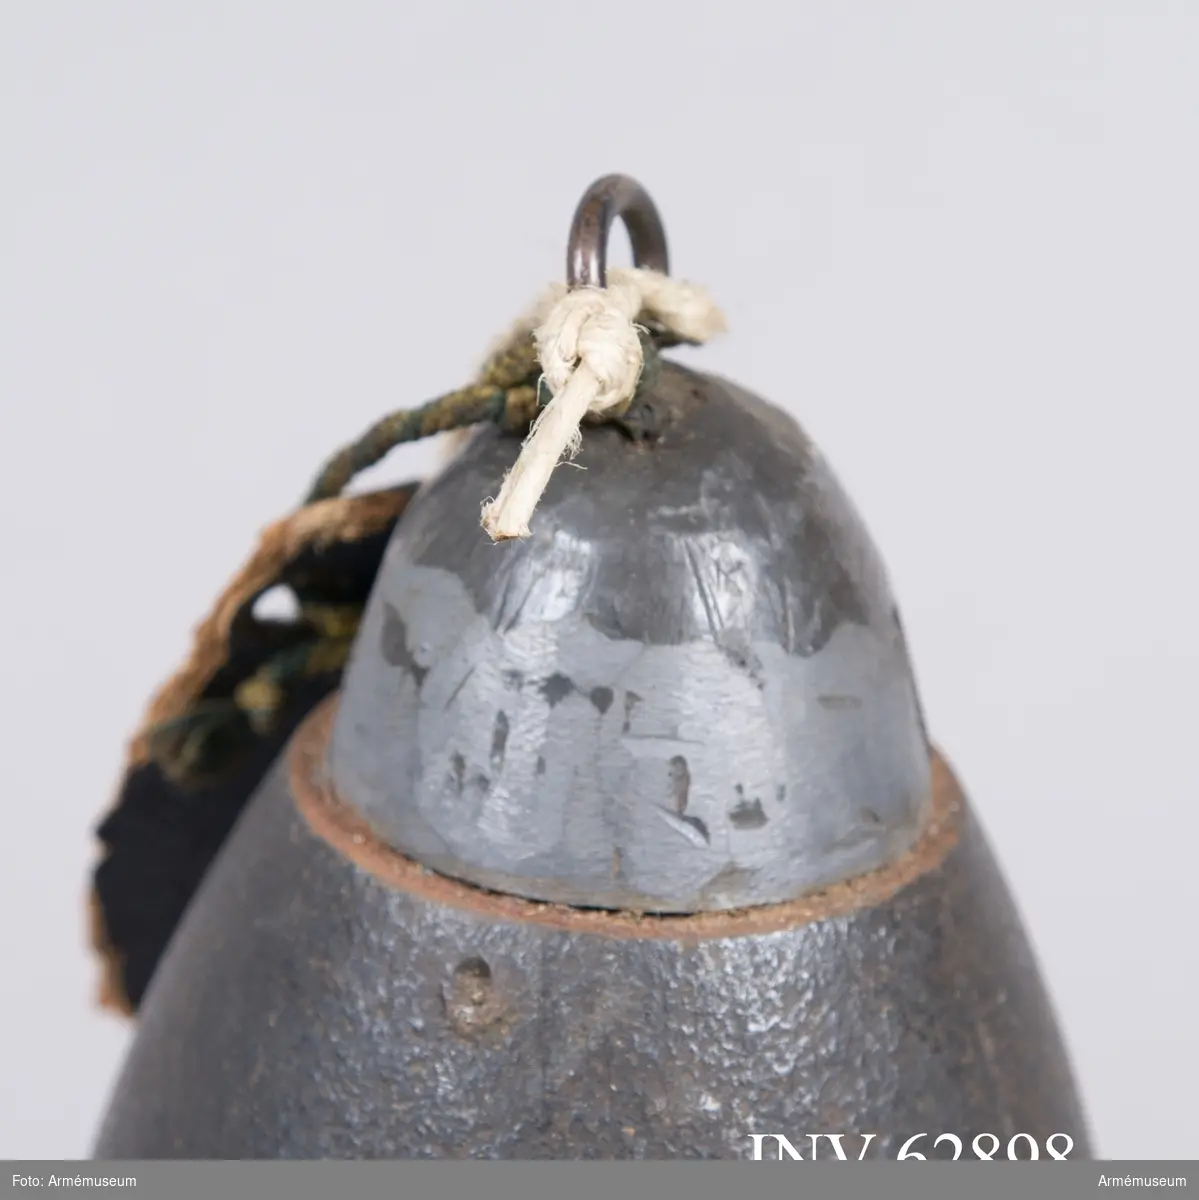 Grupp F II.
Tändrör till 7 cm (2,"25) granat. 1863 års skjutförsök.